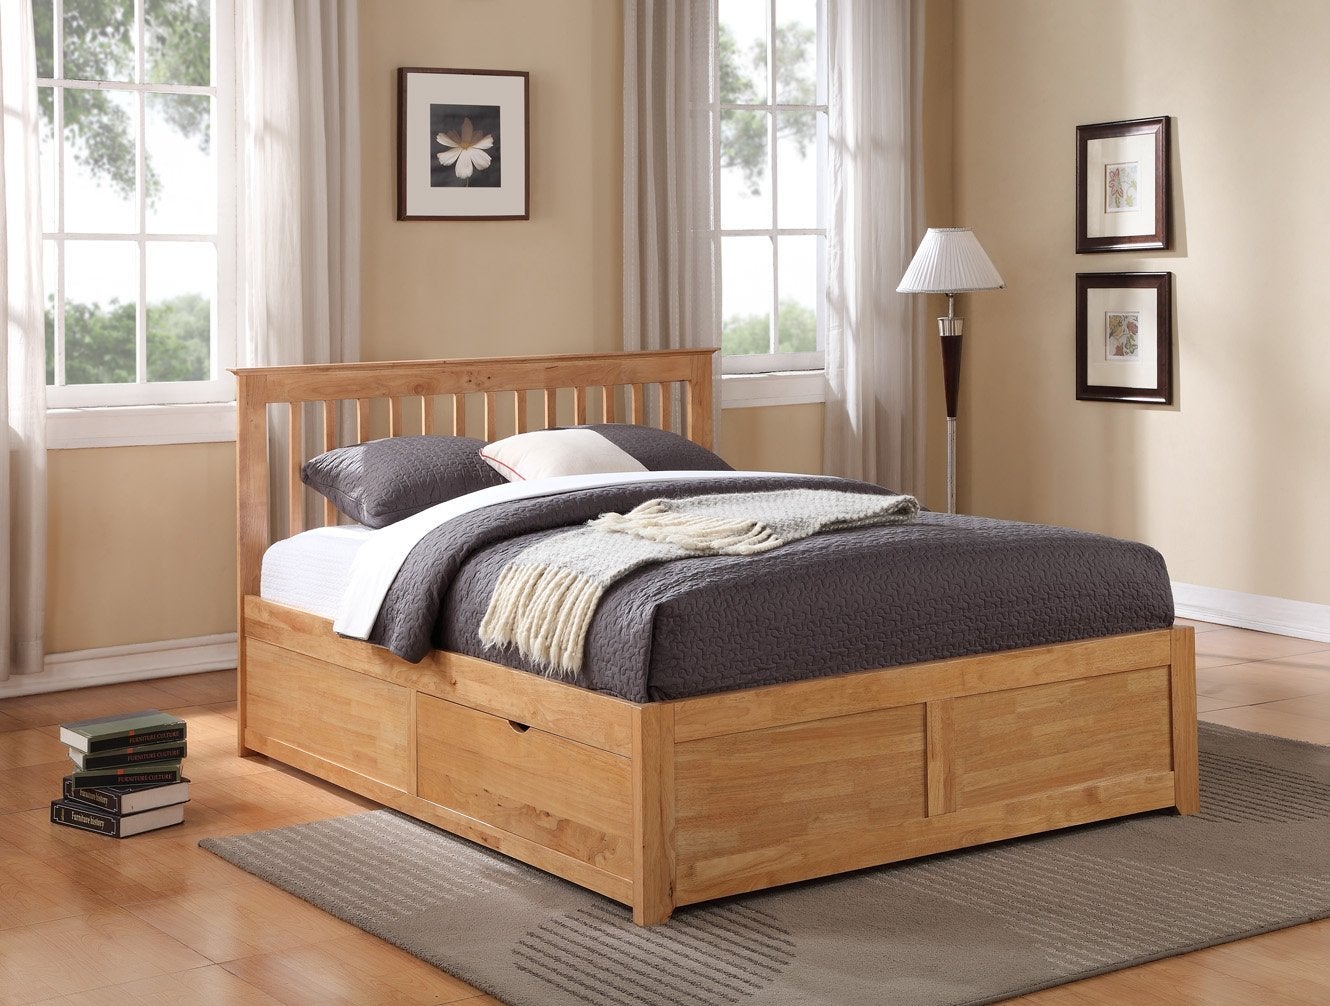 giường ngủ gỗ dổi có ngăn kéo